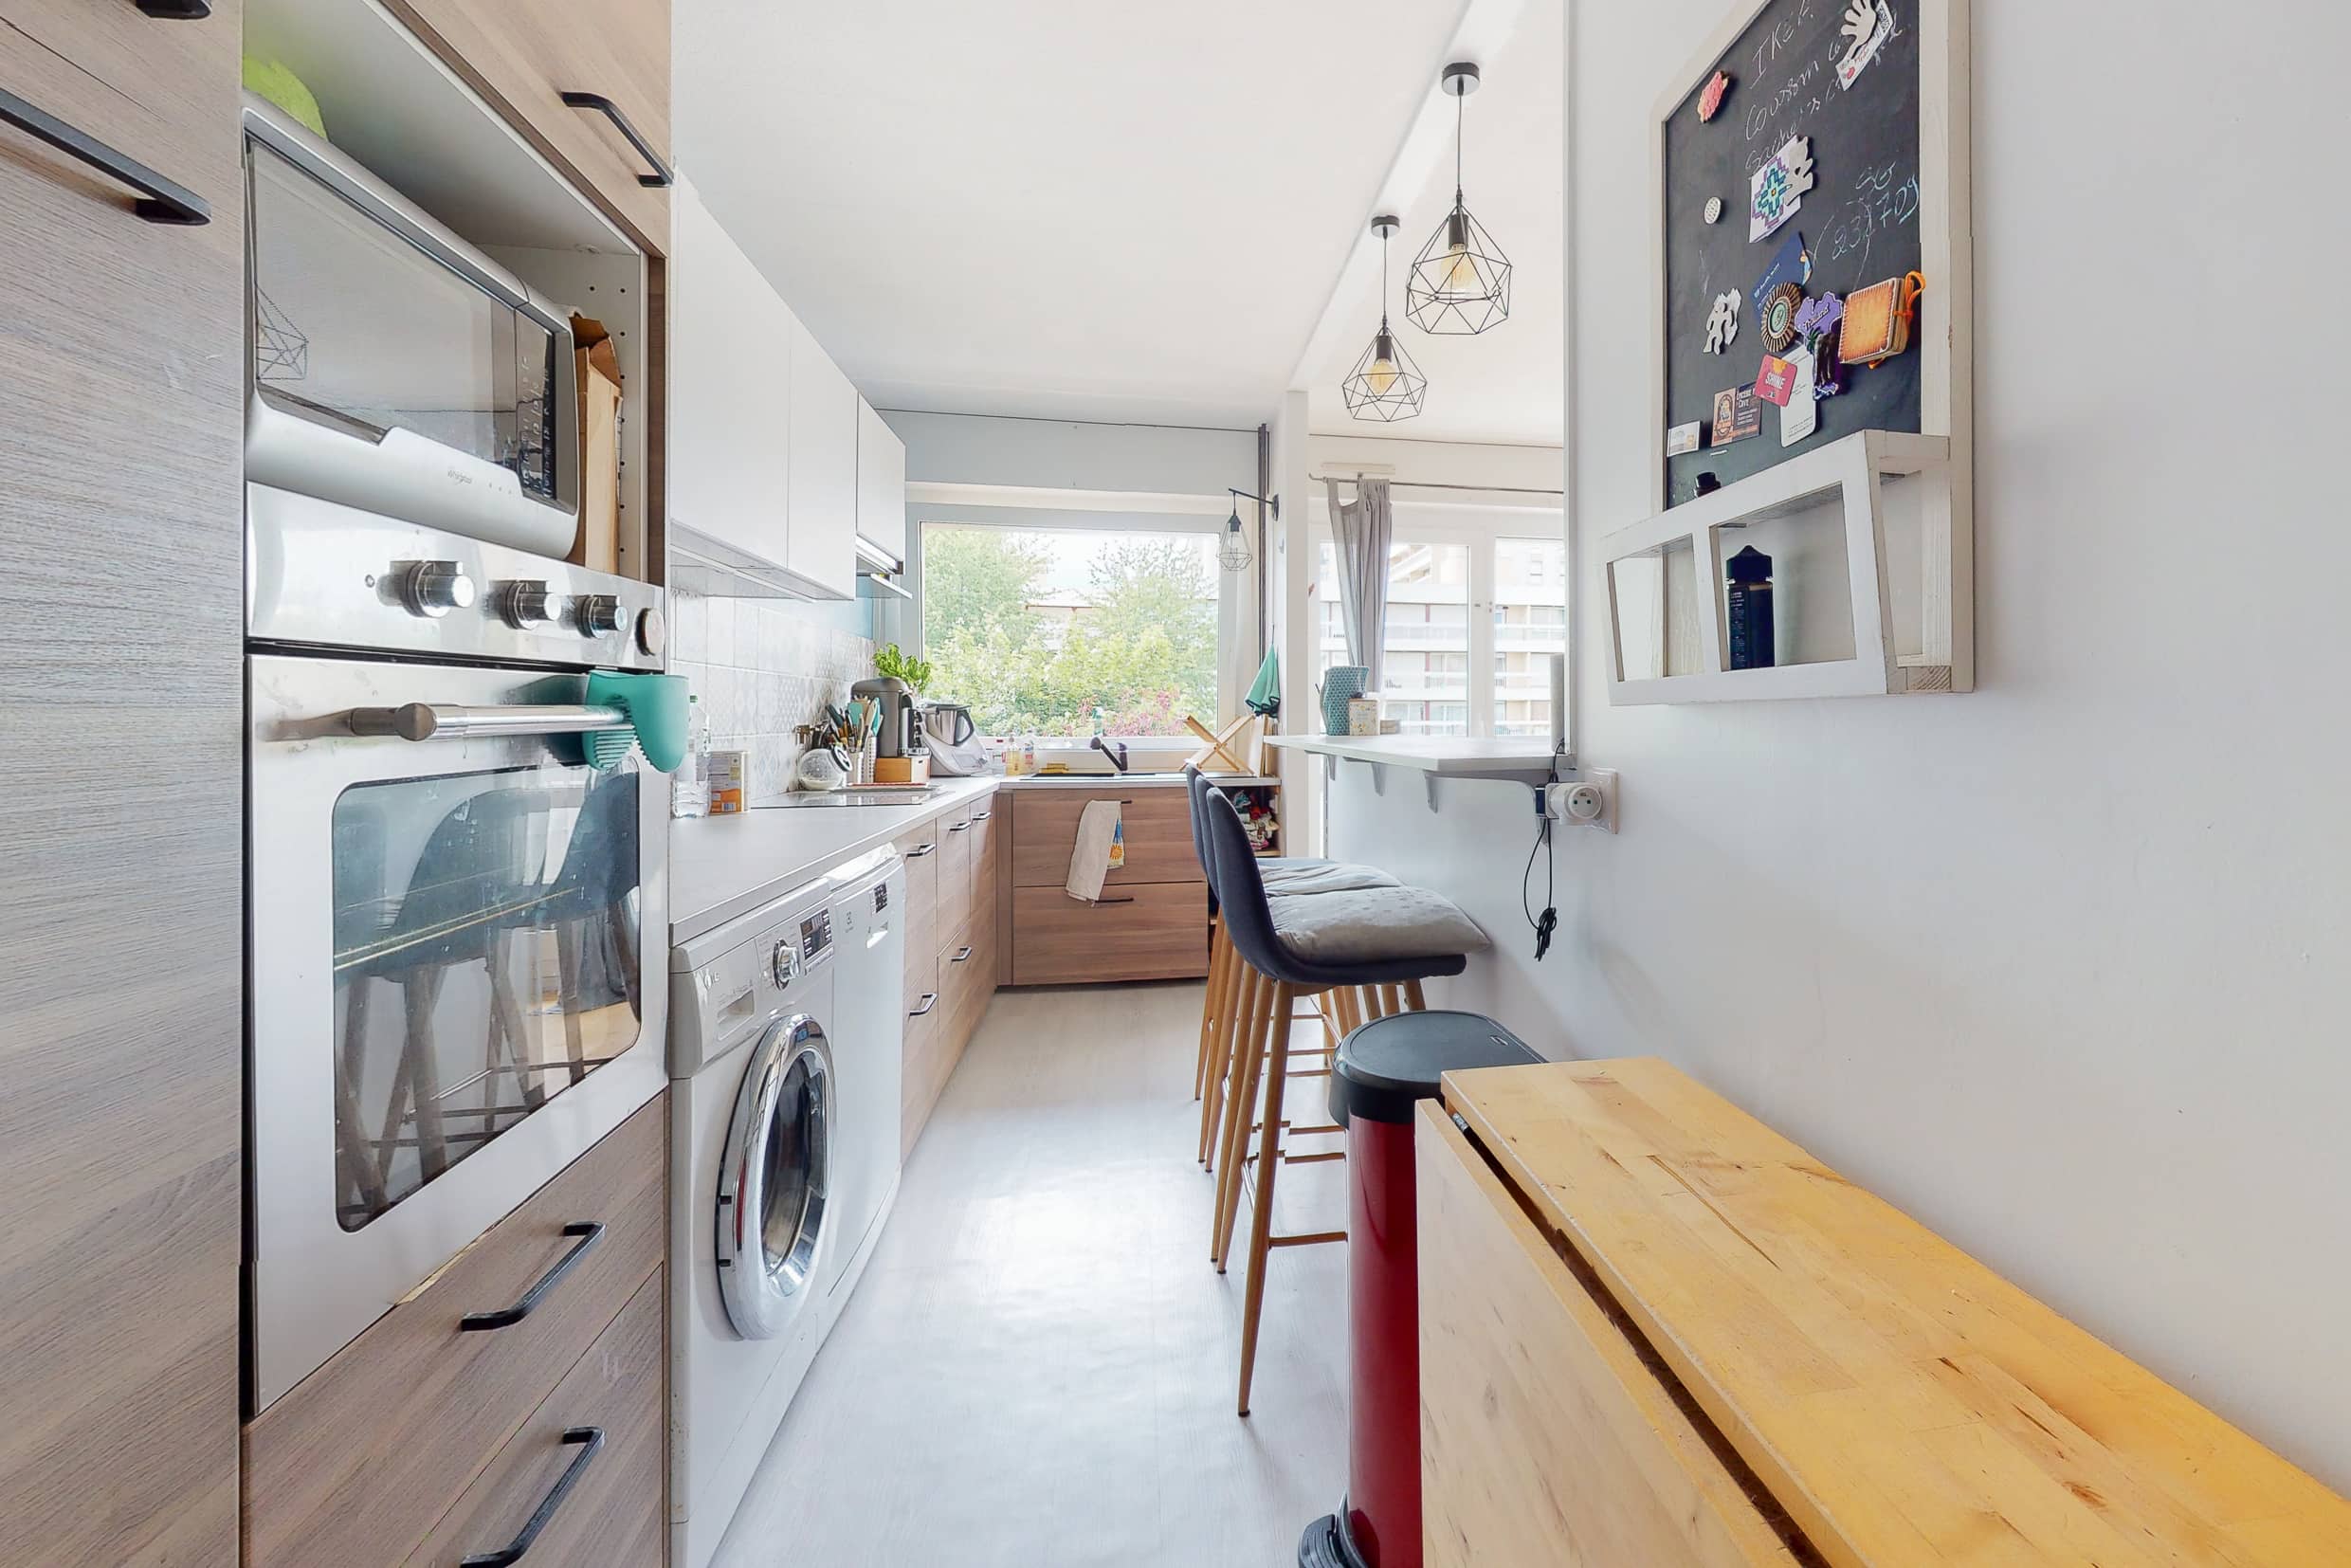 Photo de la cuisine d'un appartement tout équipée en bon état d'un appartement vendu par Pascal NICOLE